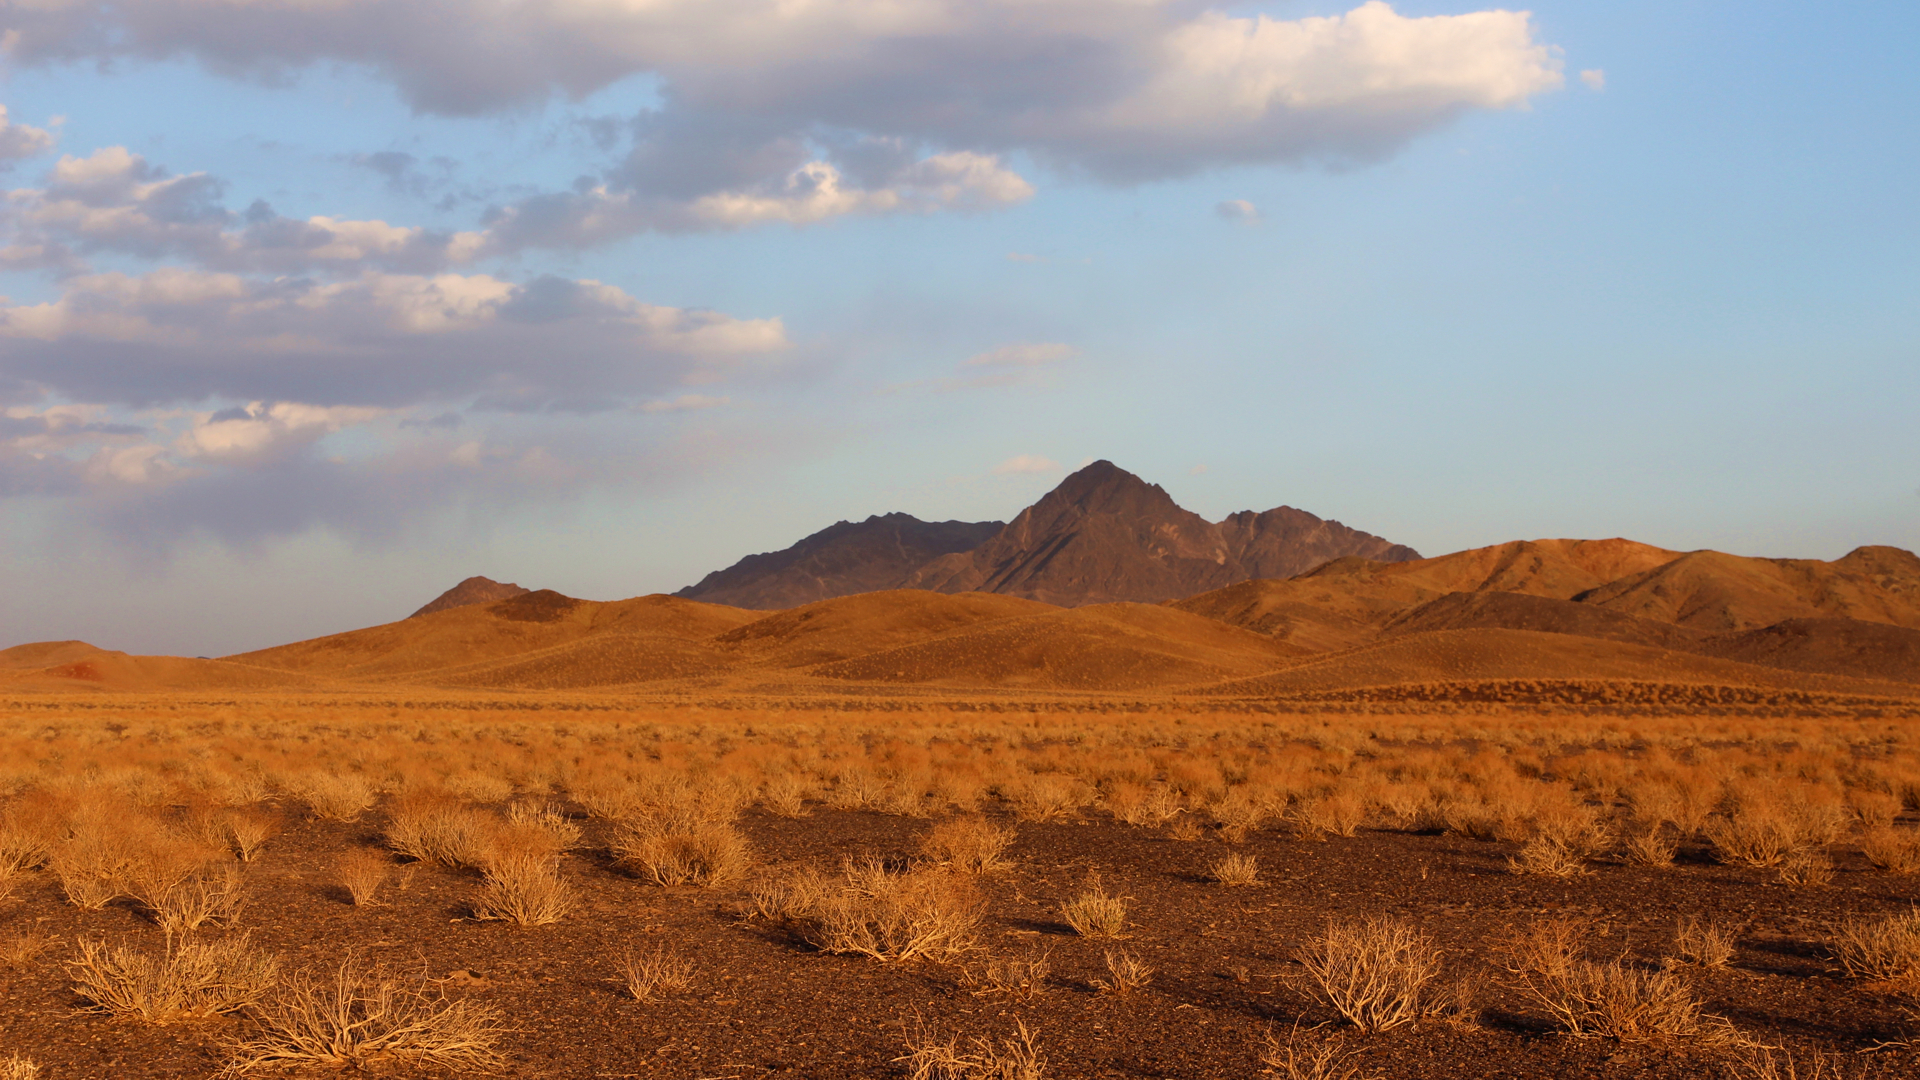 Immer wieder finden wir traumhafte Übernachtungsplätze in der Wüste